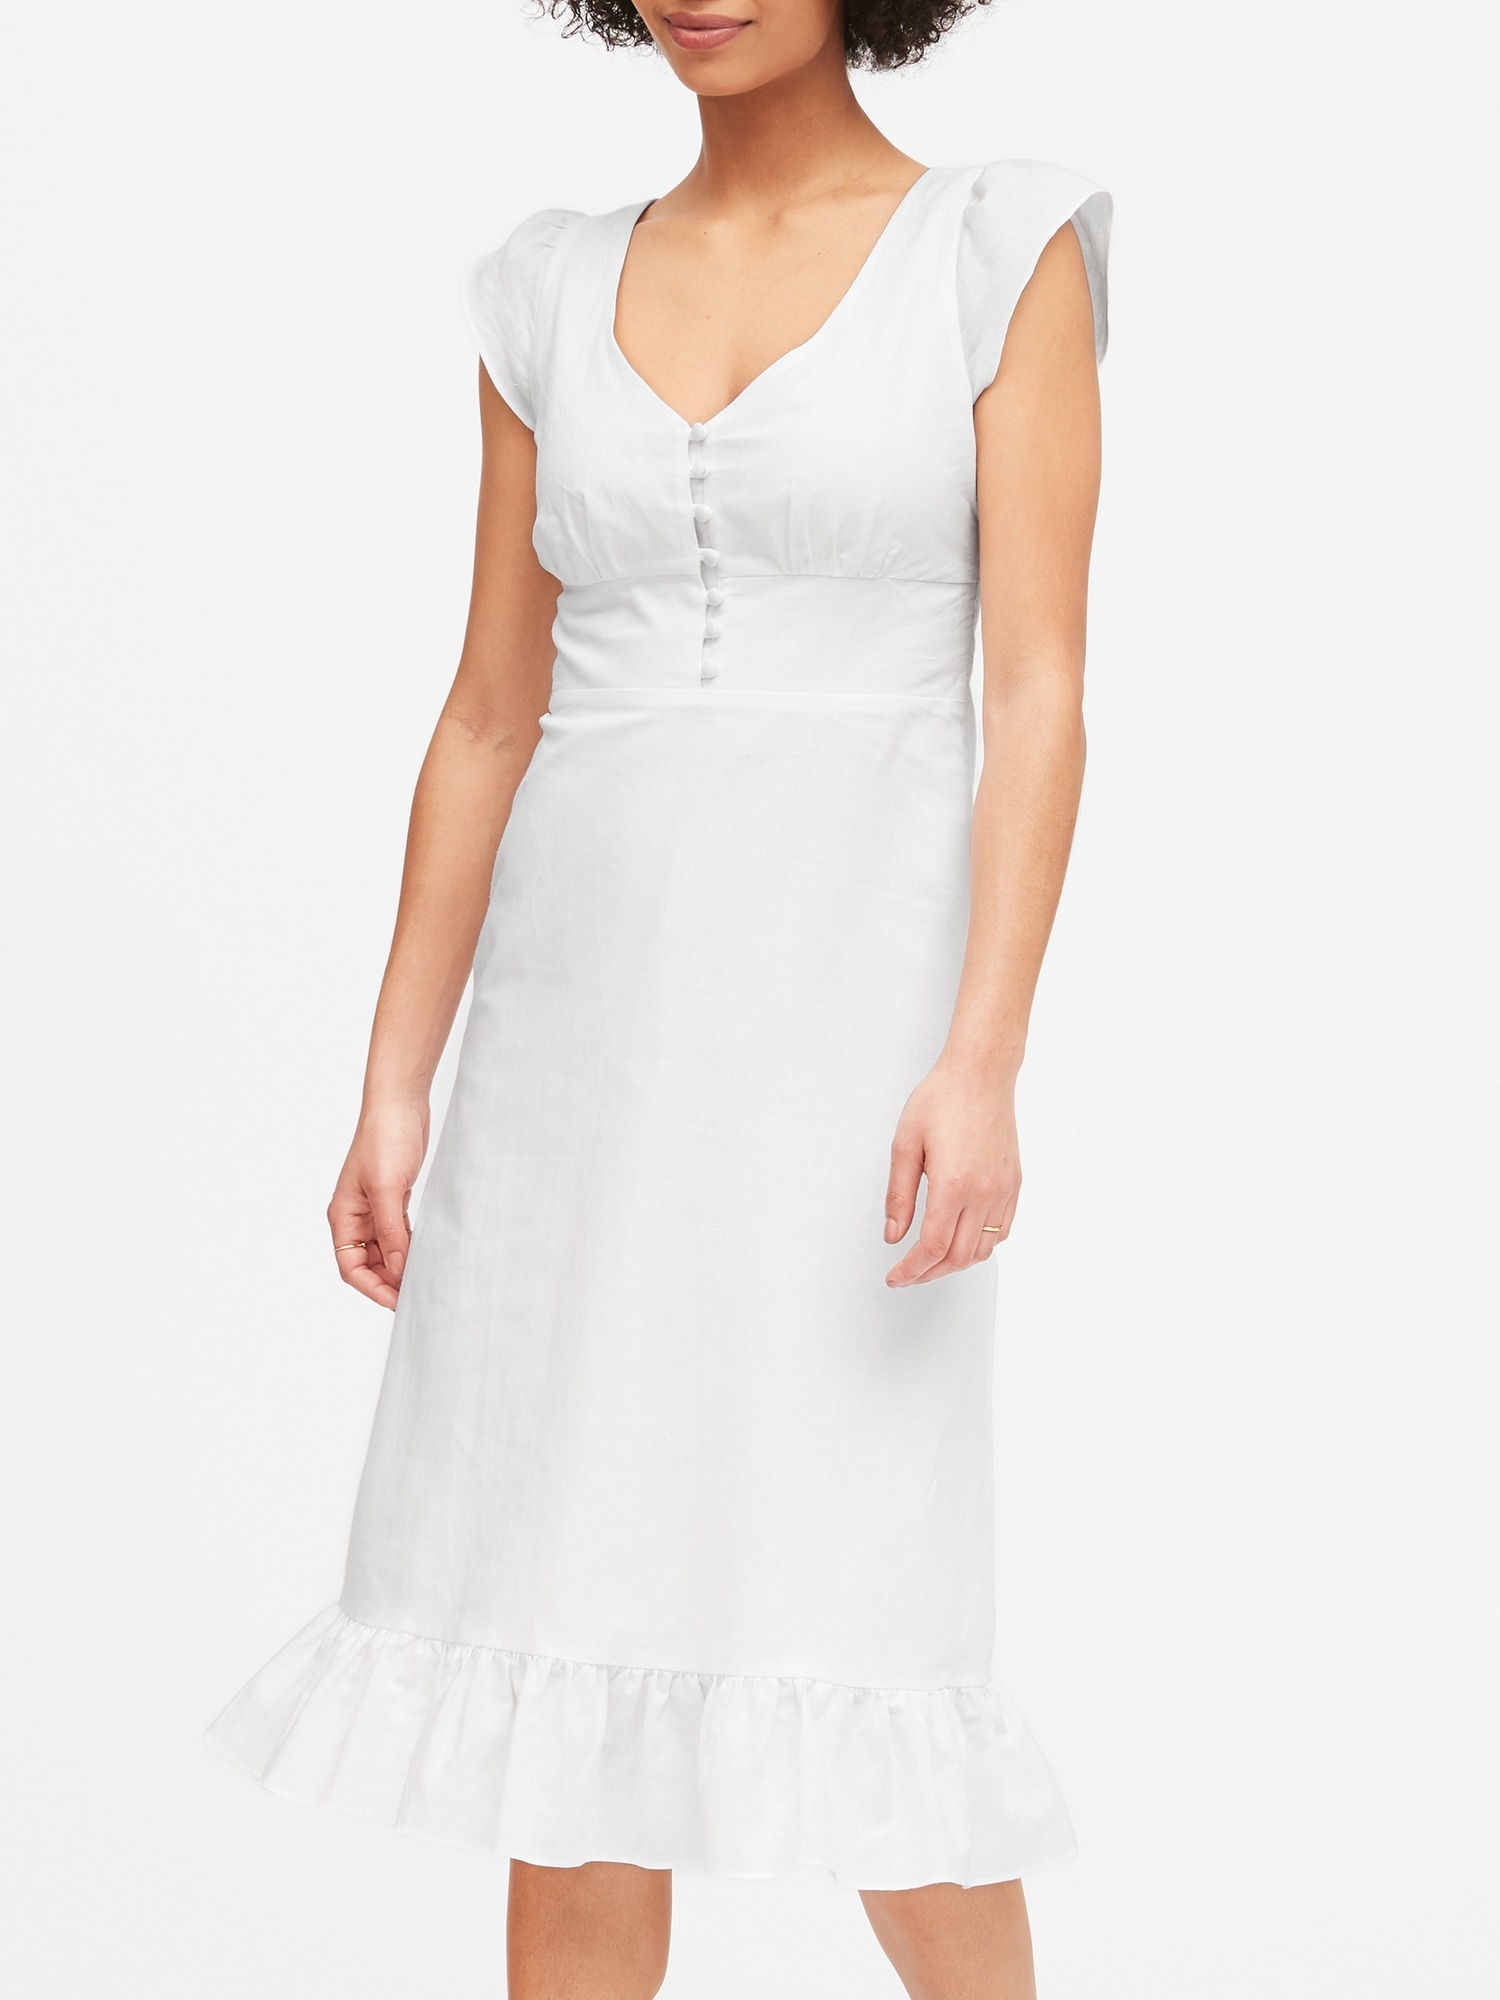 white linen button up dress